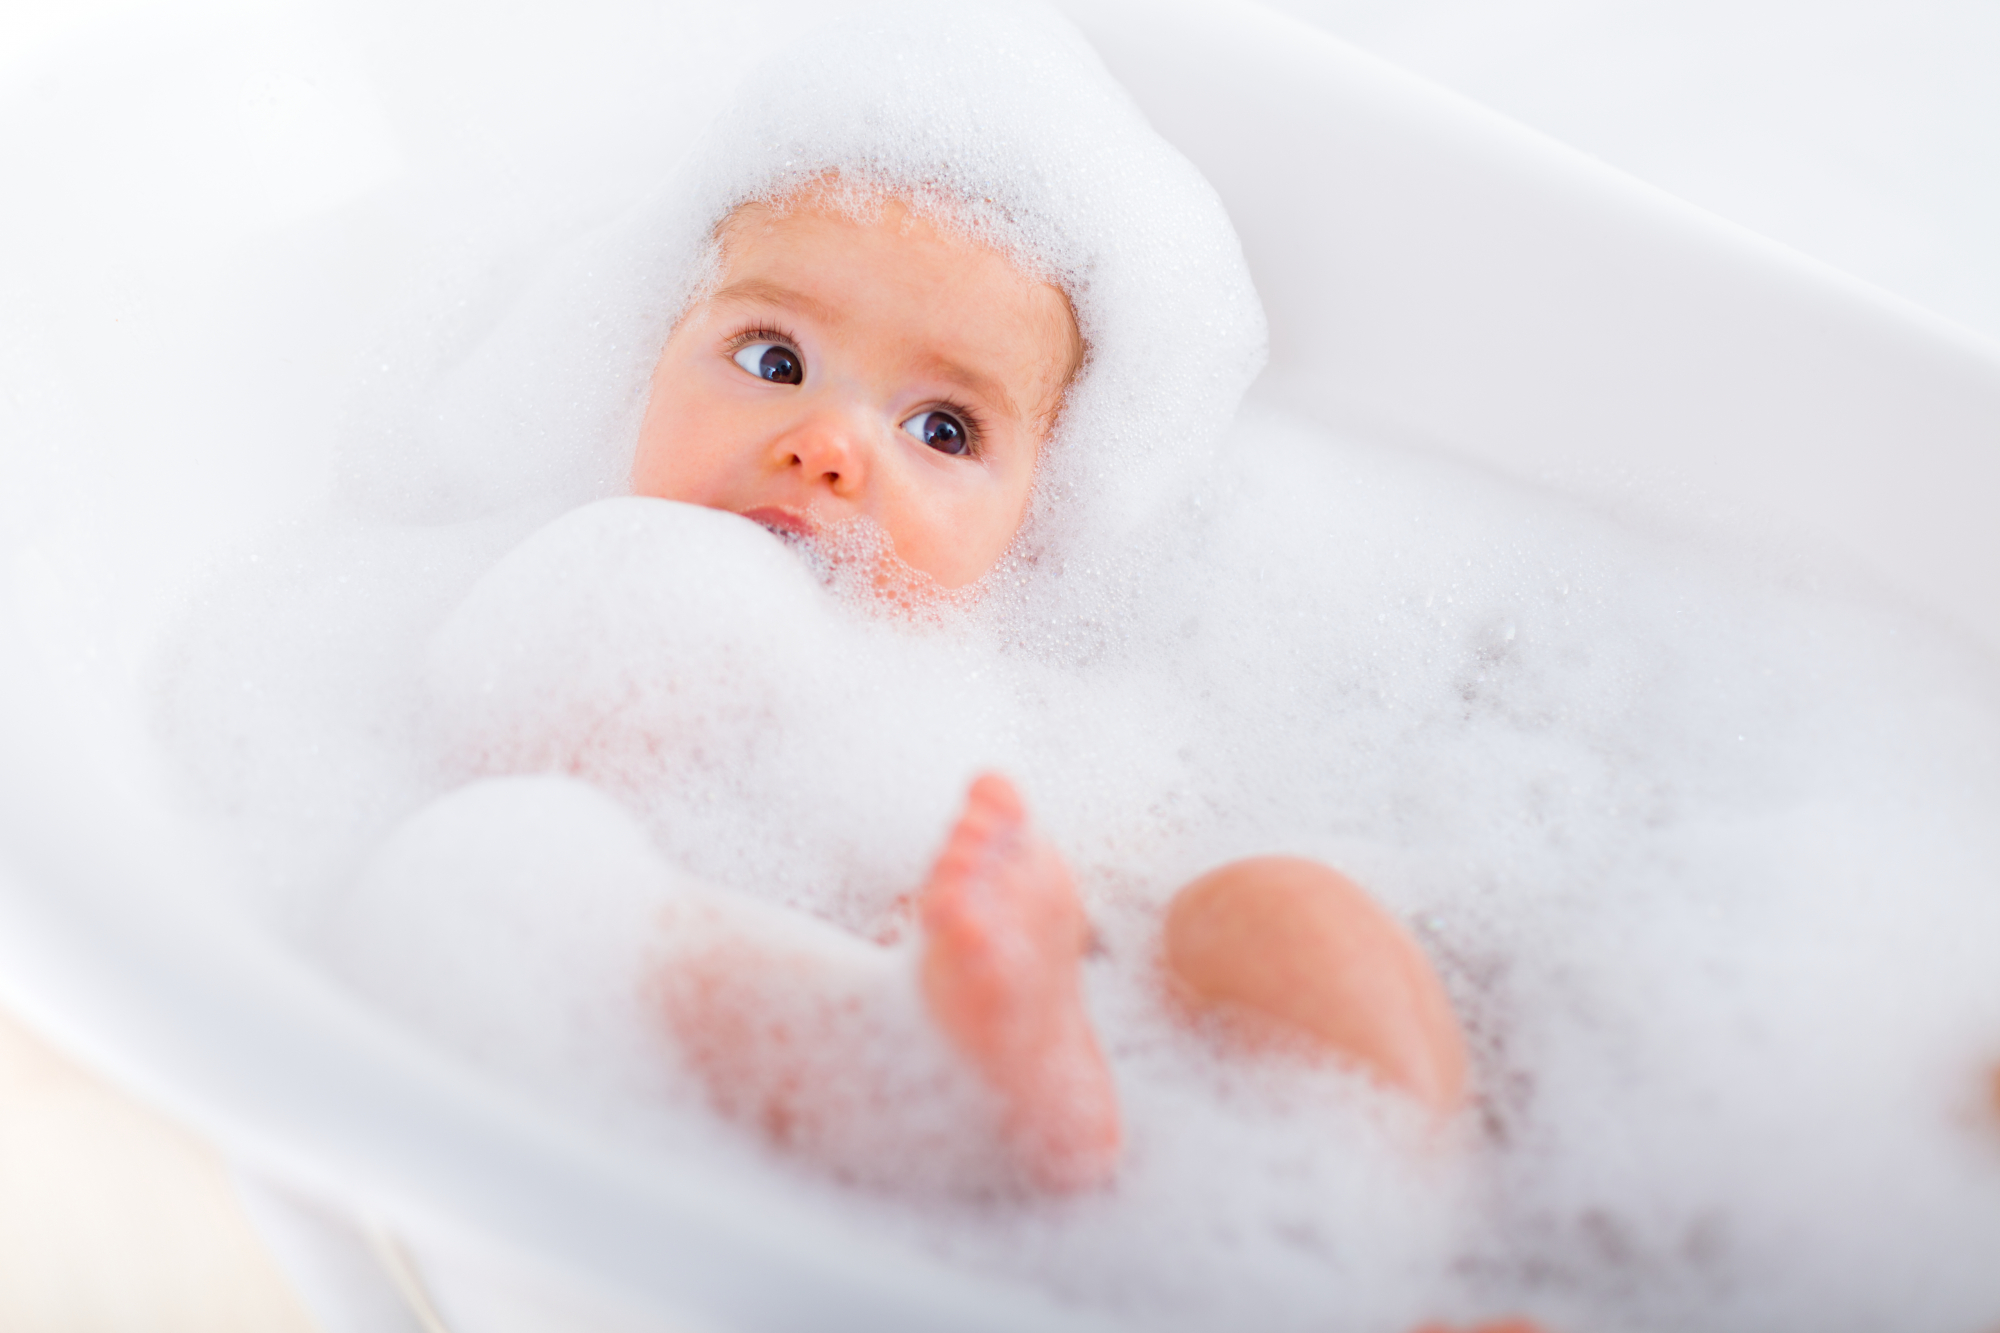 Πώς να κάνω μπάνιο το μωρό; Tips για να τα καταφέρεις εύκολα και με ασφάλεια